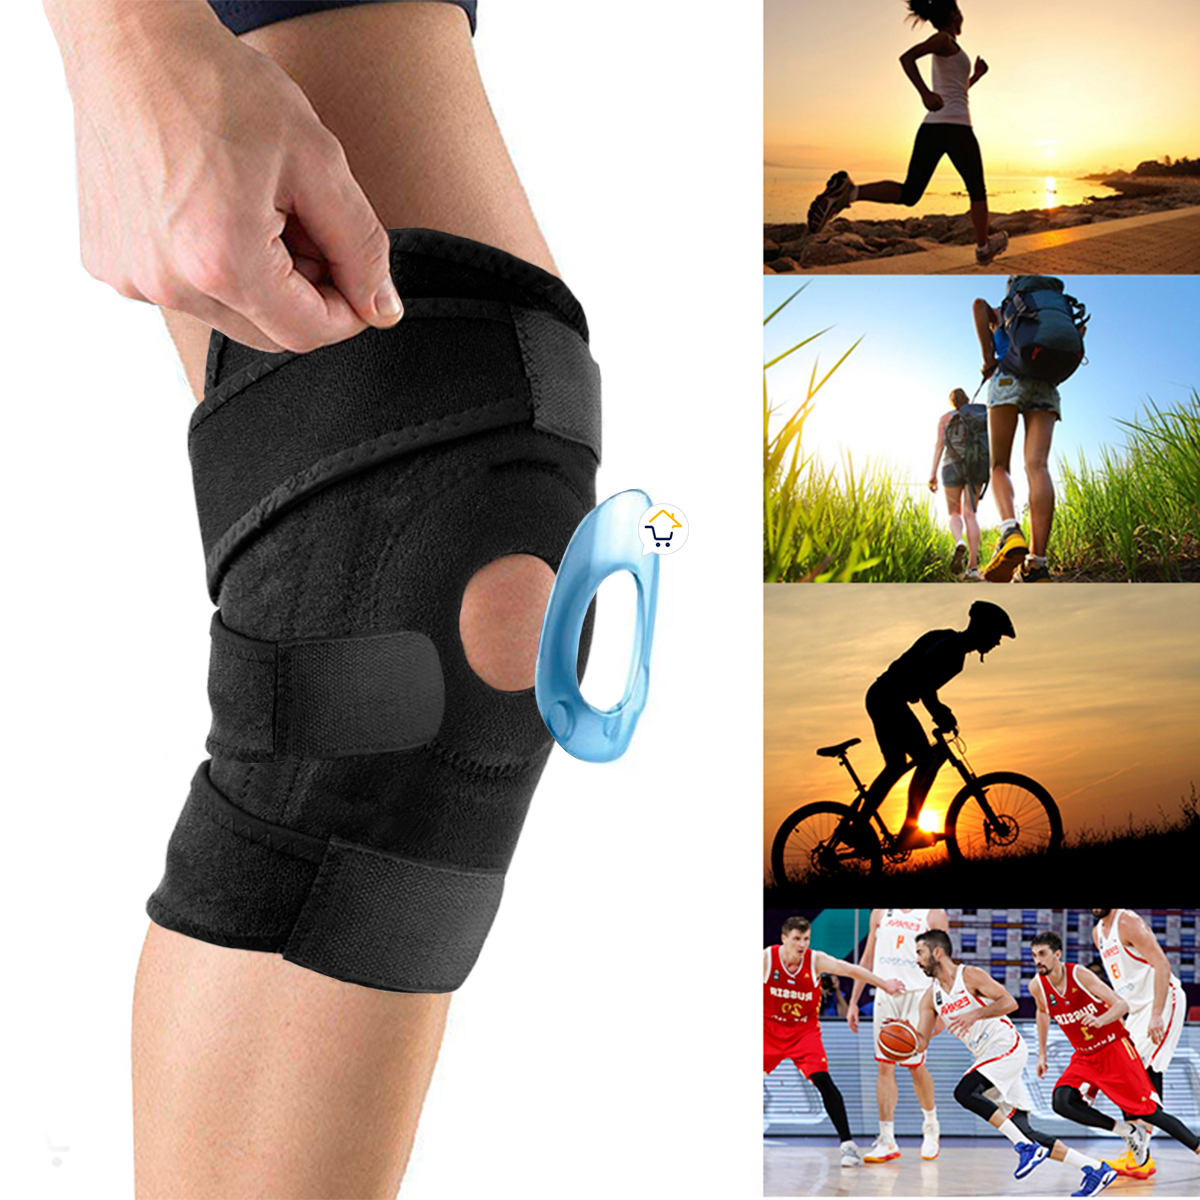 rodillera-ortopédica-soporte-rodilla-rotula-protección-deportes-733b